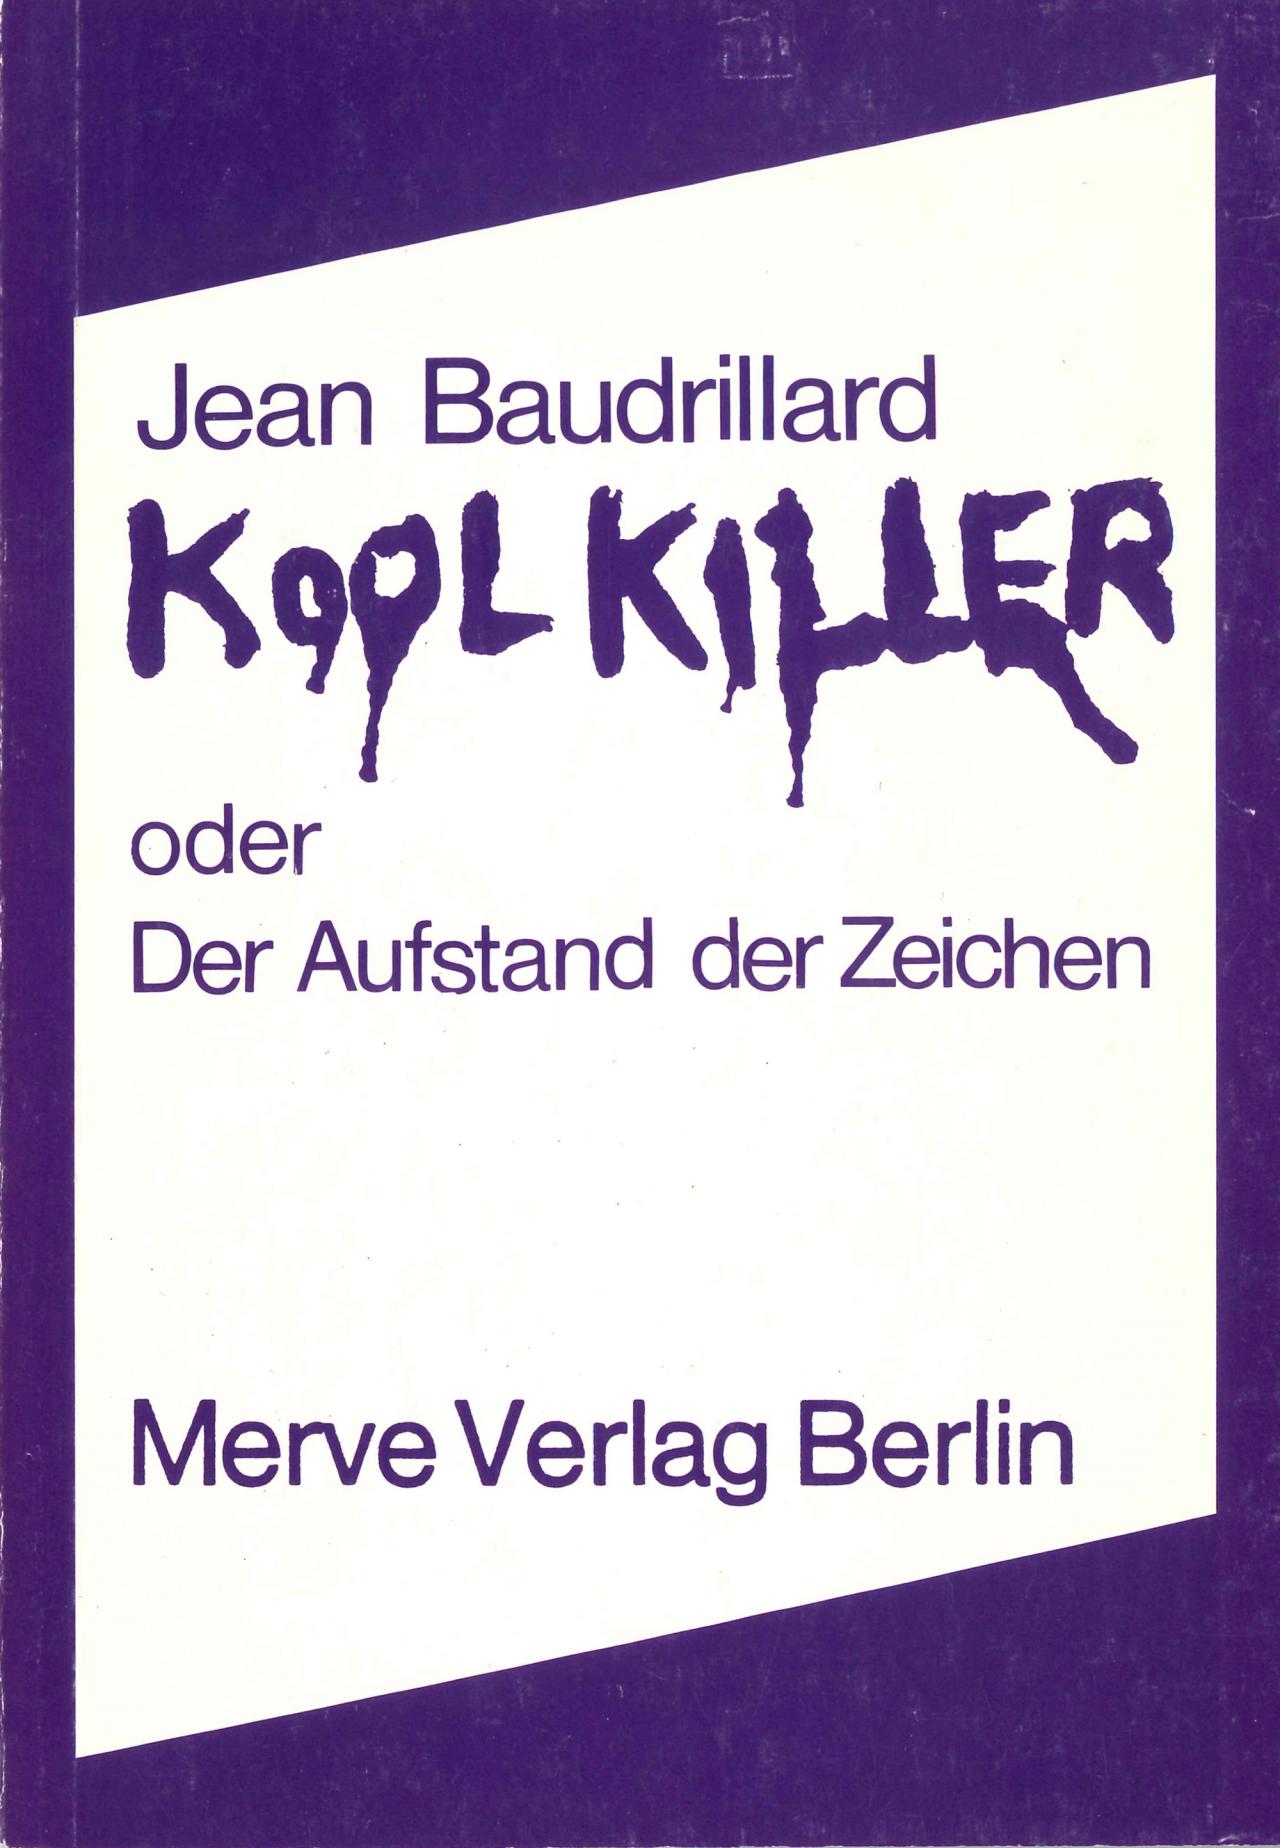 Jean Baudrillard: Kool Killer oder der Aufstand der Zeichen, Berlin 1978.